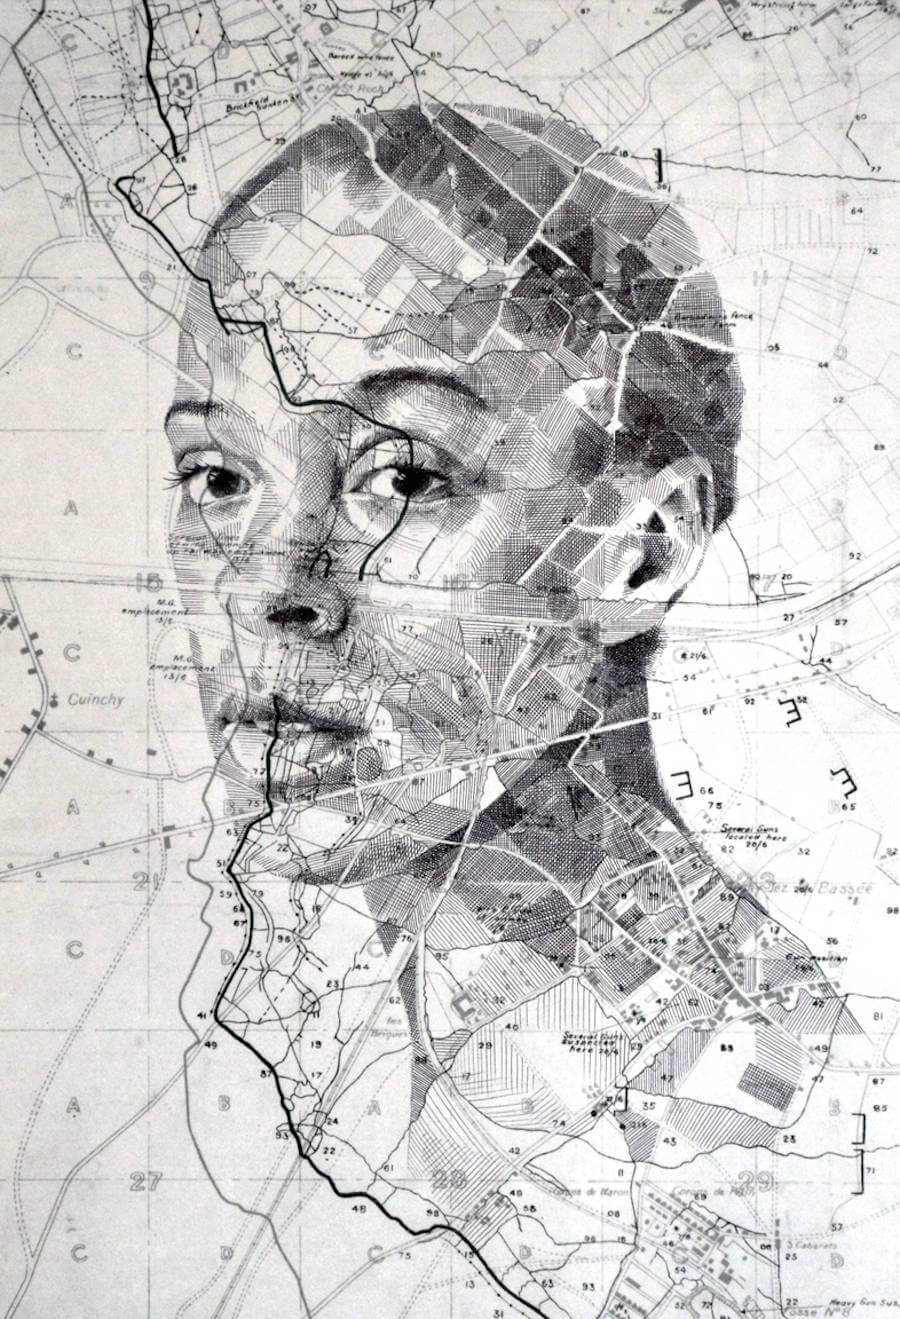 Portraits Drawn on Maps by Ed Fairburn (3)